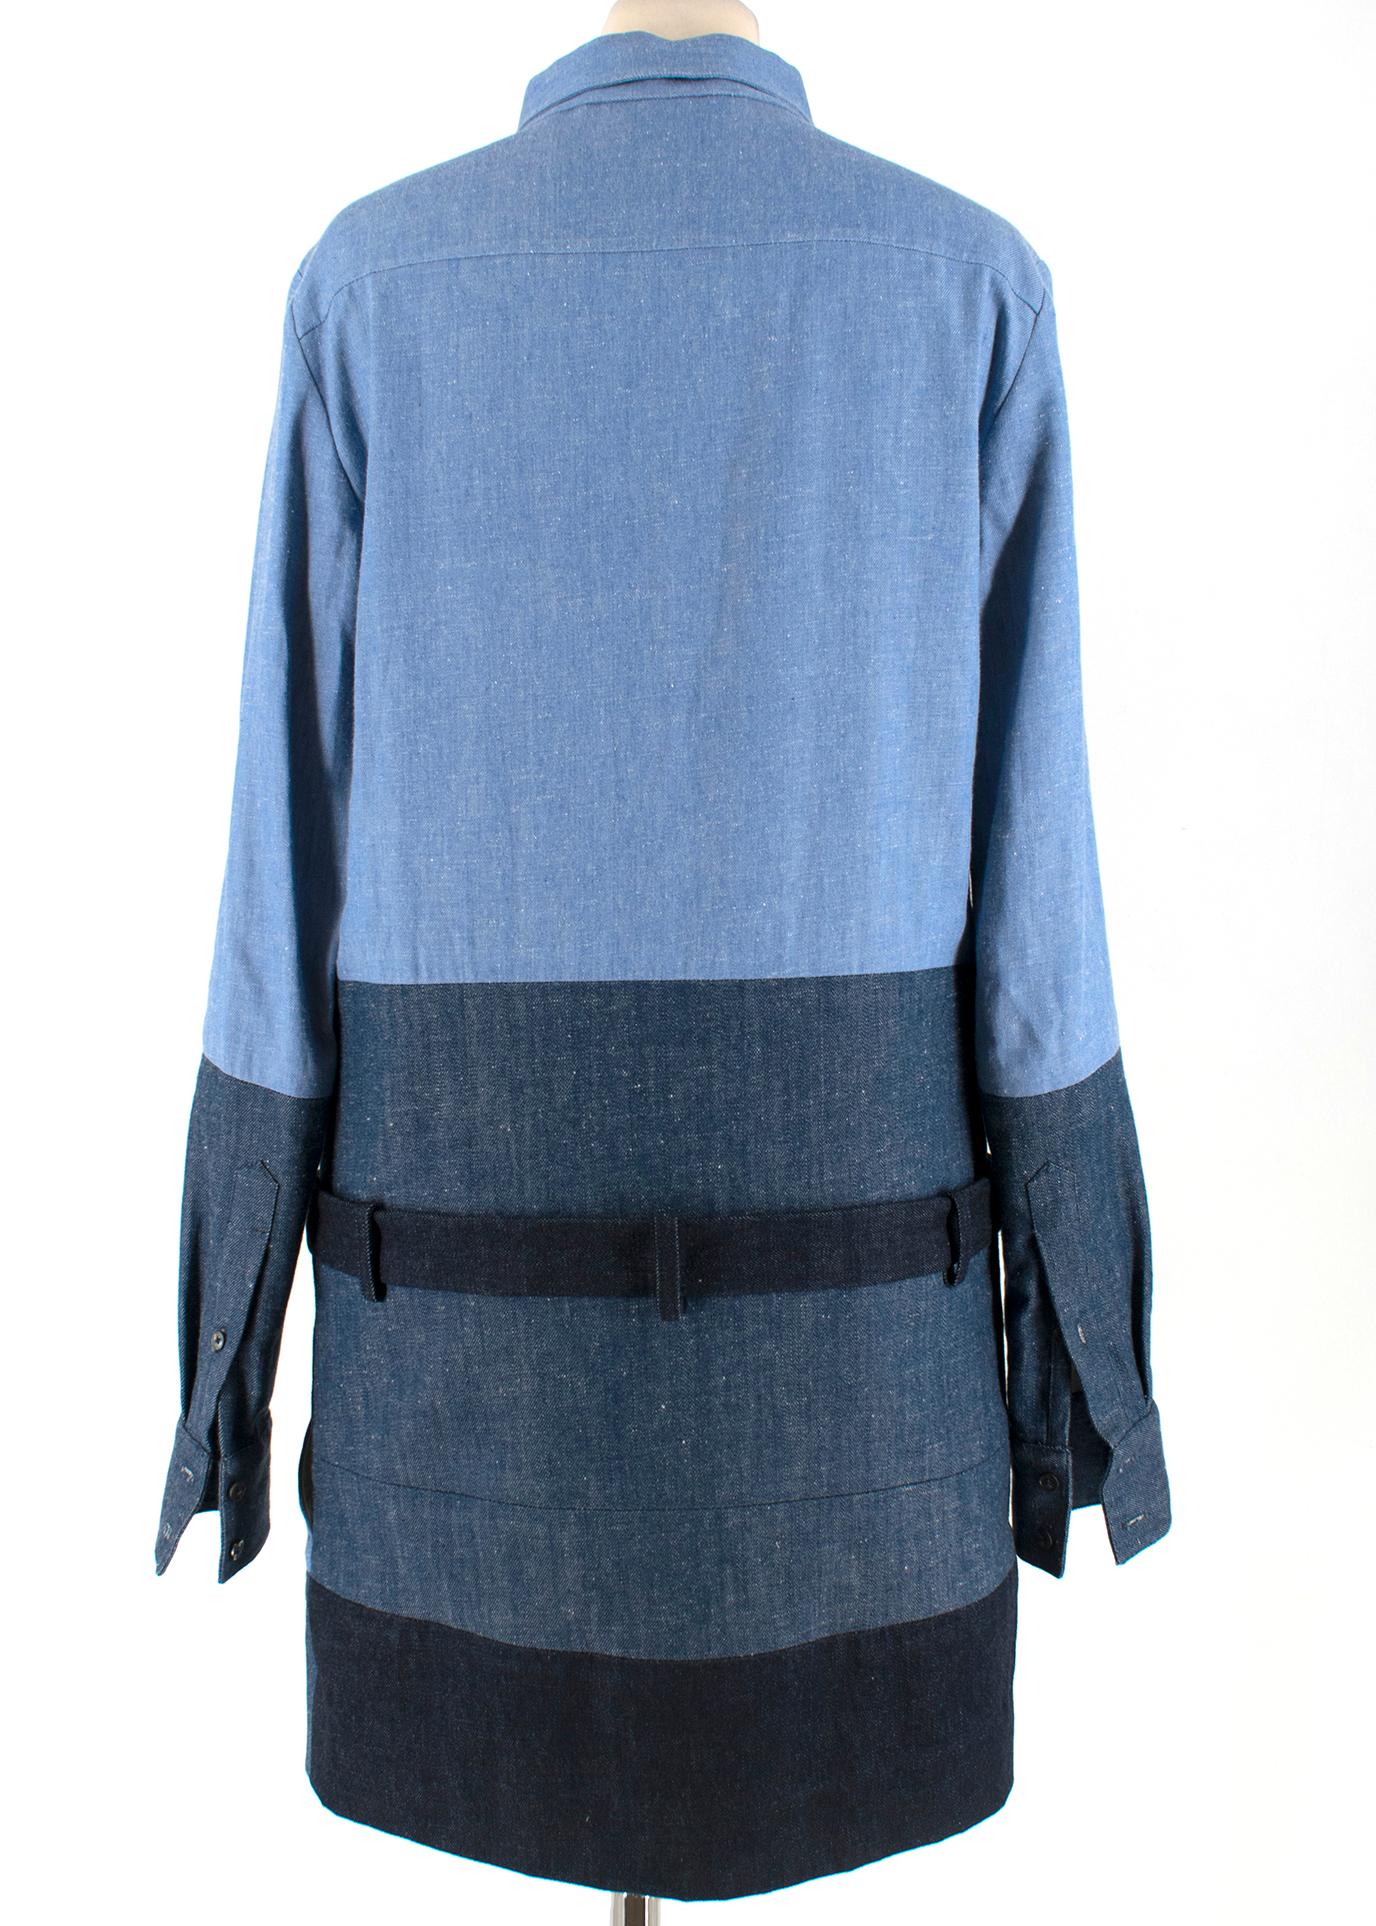 Blue Celine by Phoebe Philo Denim Patchwork Mini Dress - Size US 8